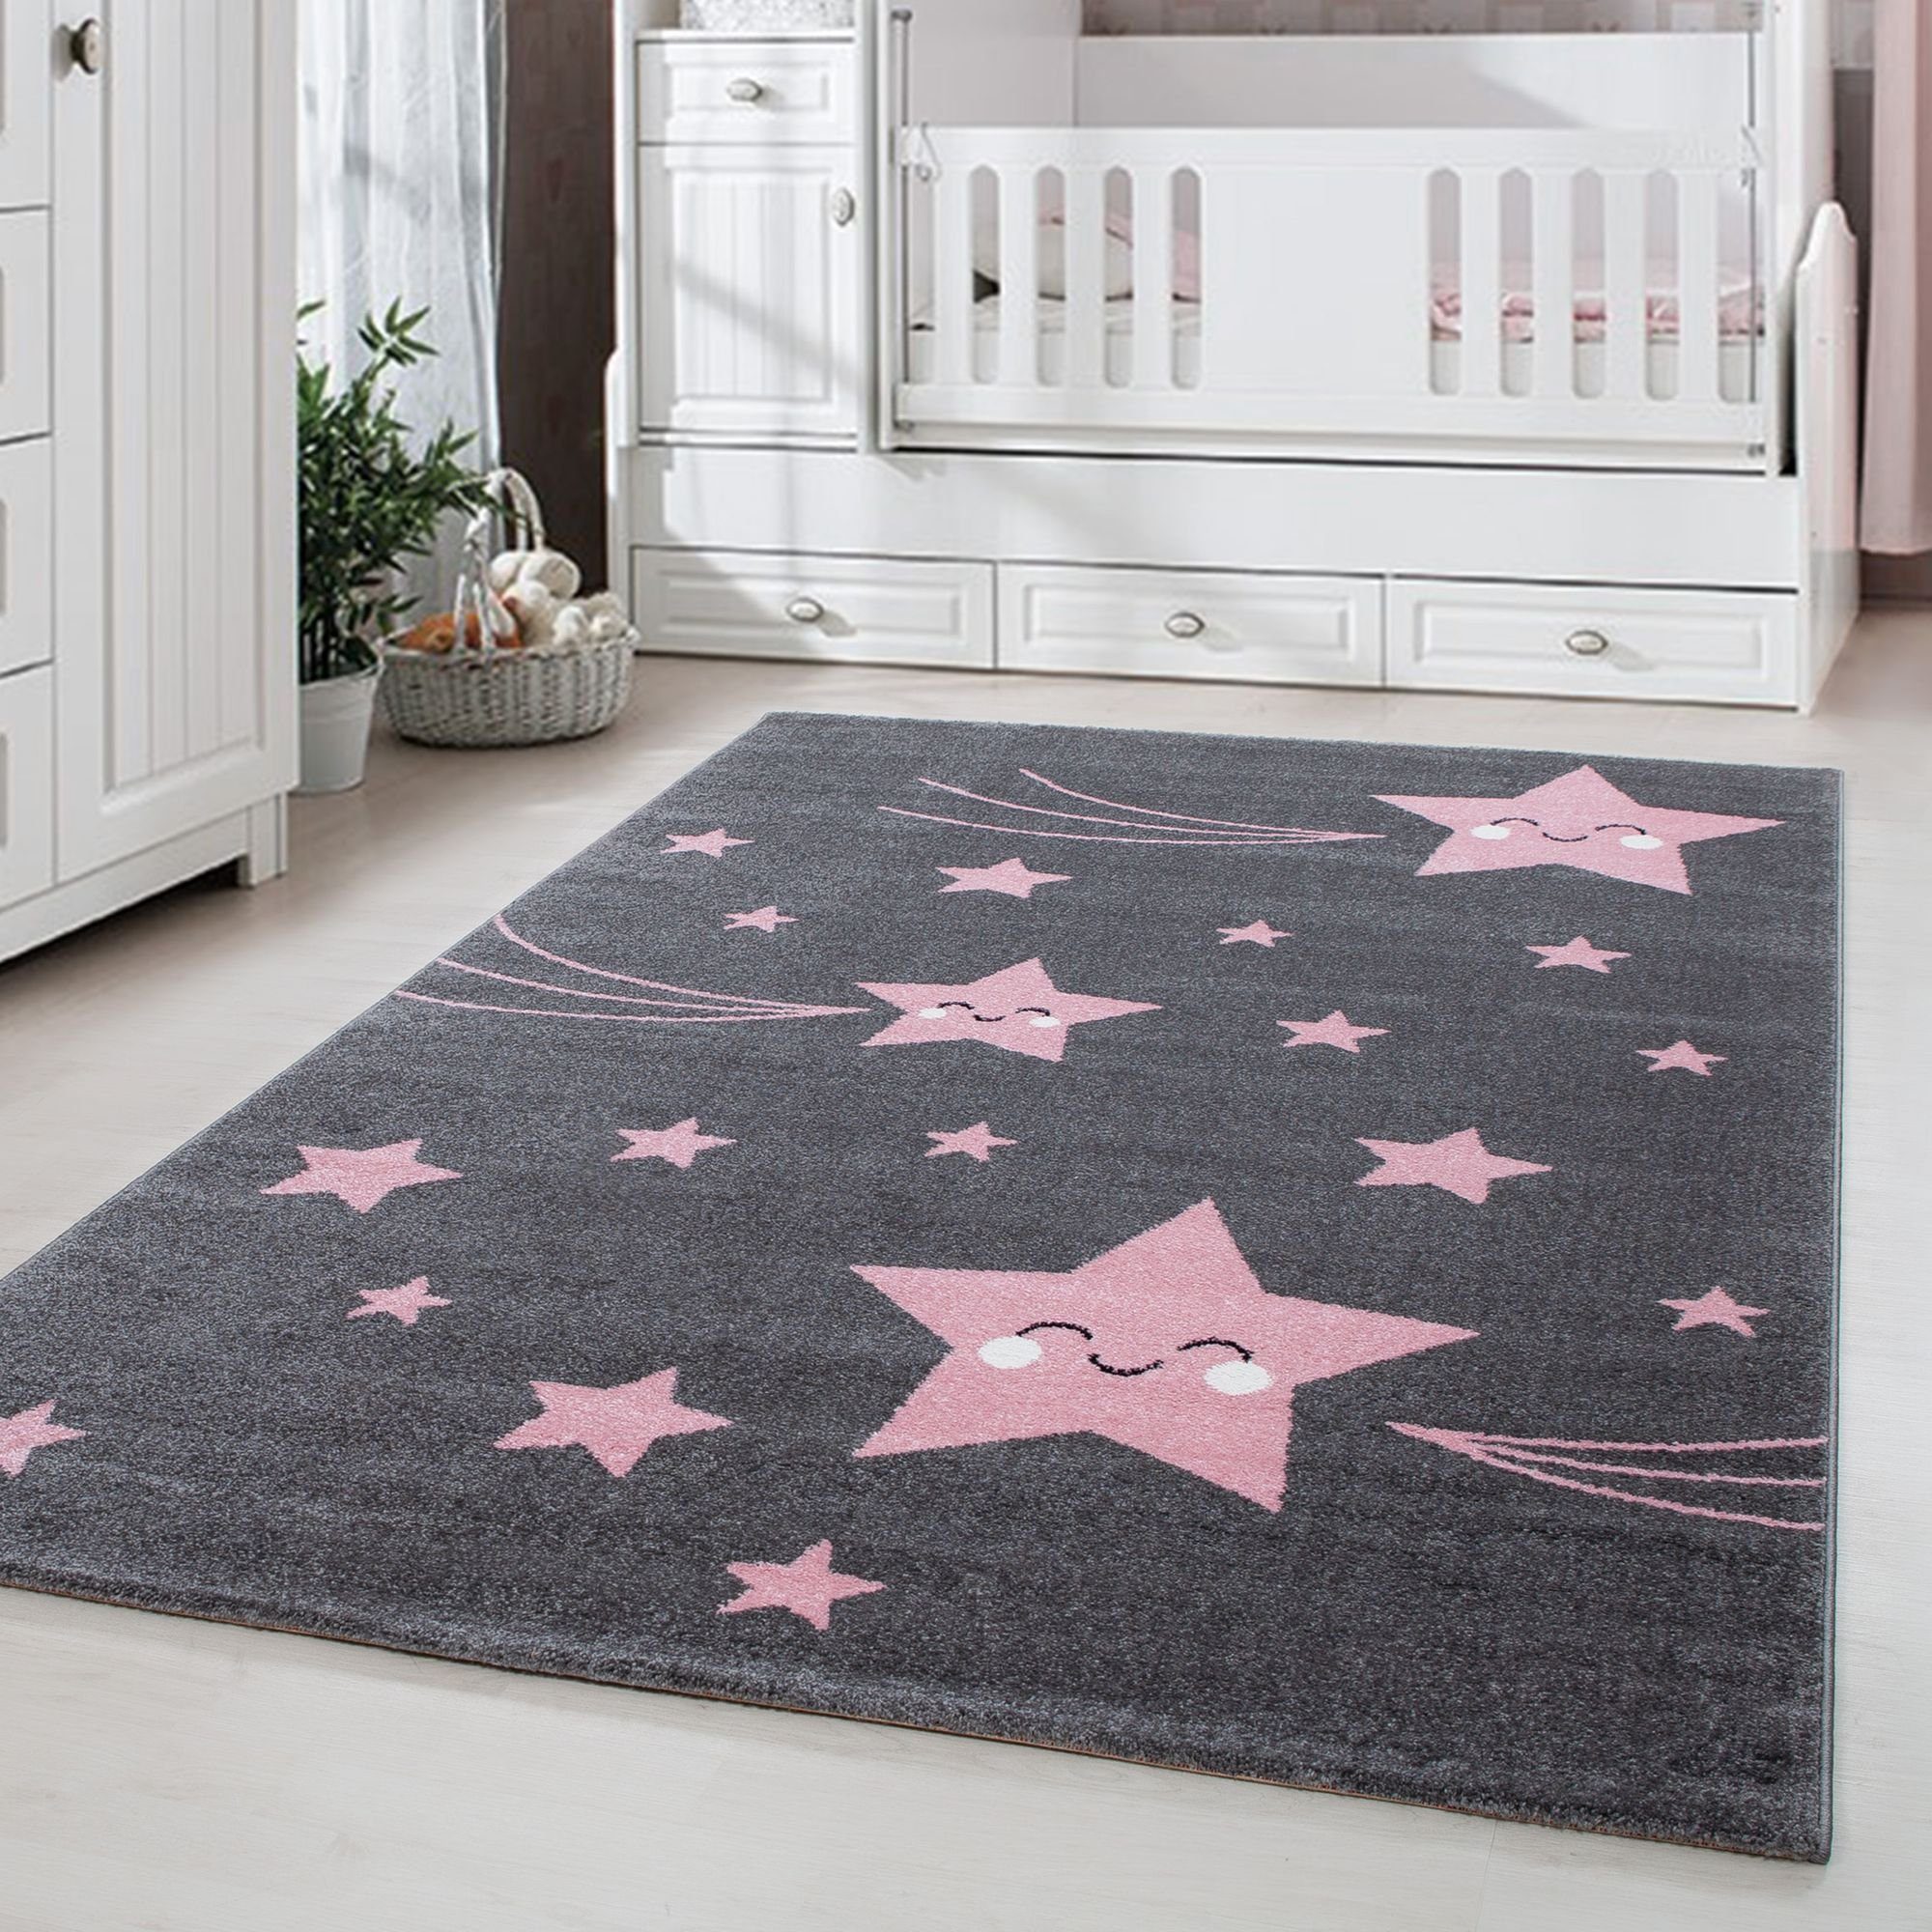 Kinderteppich Sterne-Design, Carpetsale24, Kinderteppich Rosa Stern-Design mm, Pflegeleicht Kinderzimmer Baby Teppich Rechteckig, Höhe: 11